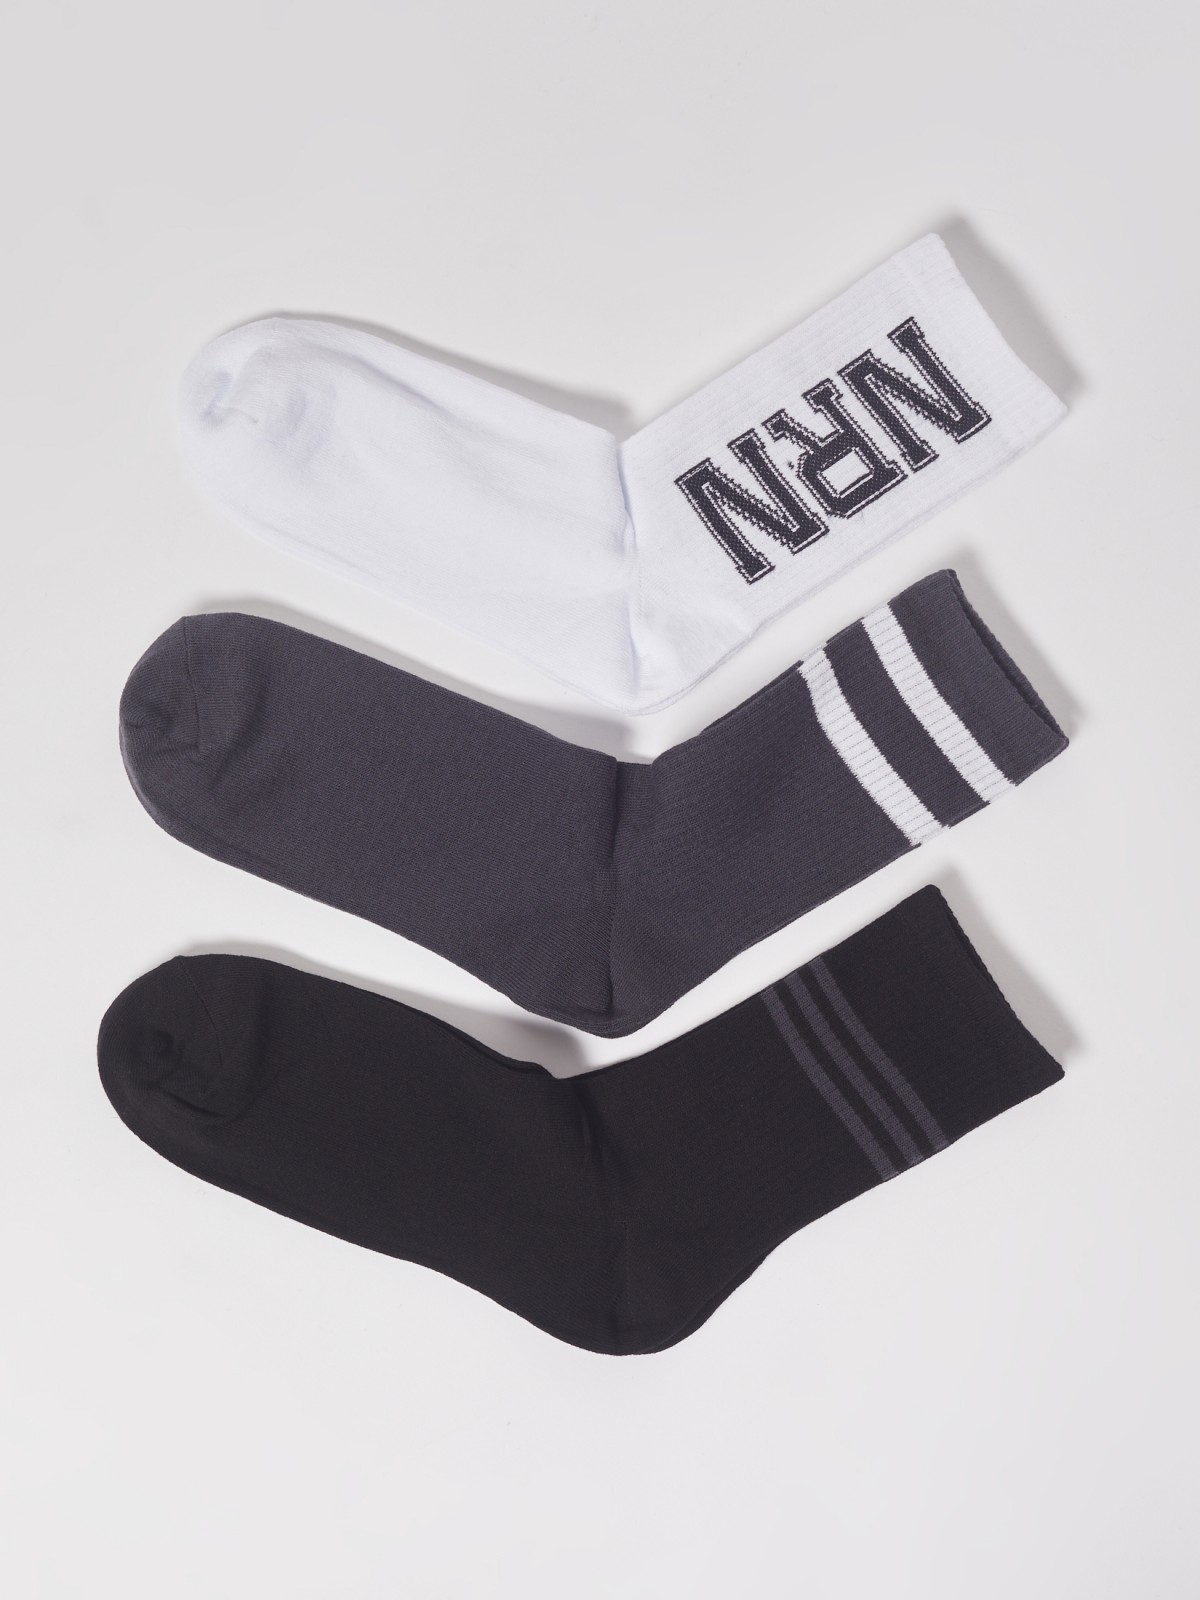 Набор высоких носков (3 пары в комплекте) zolla 01311998J185, цвет черный, размер 25-27